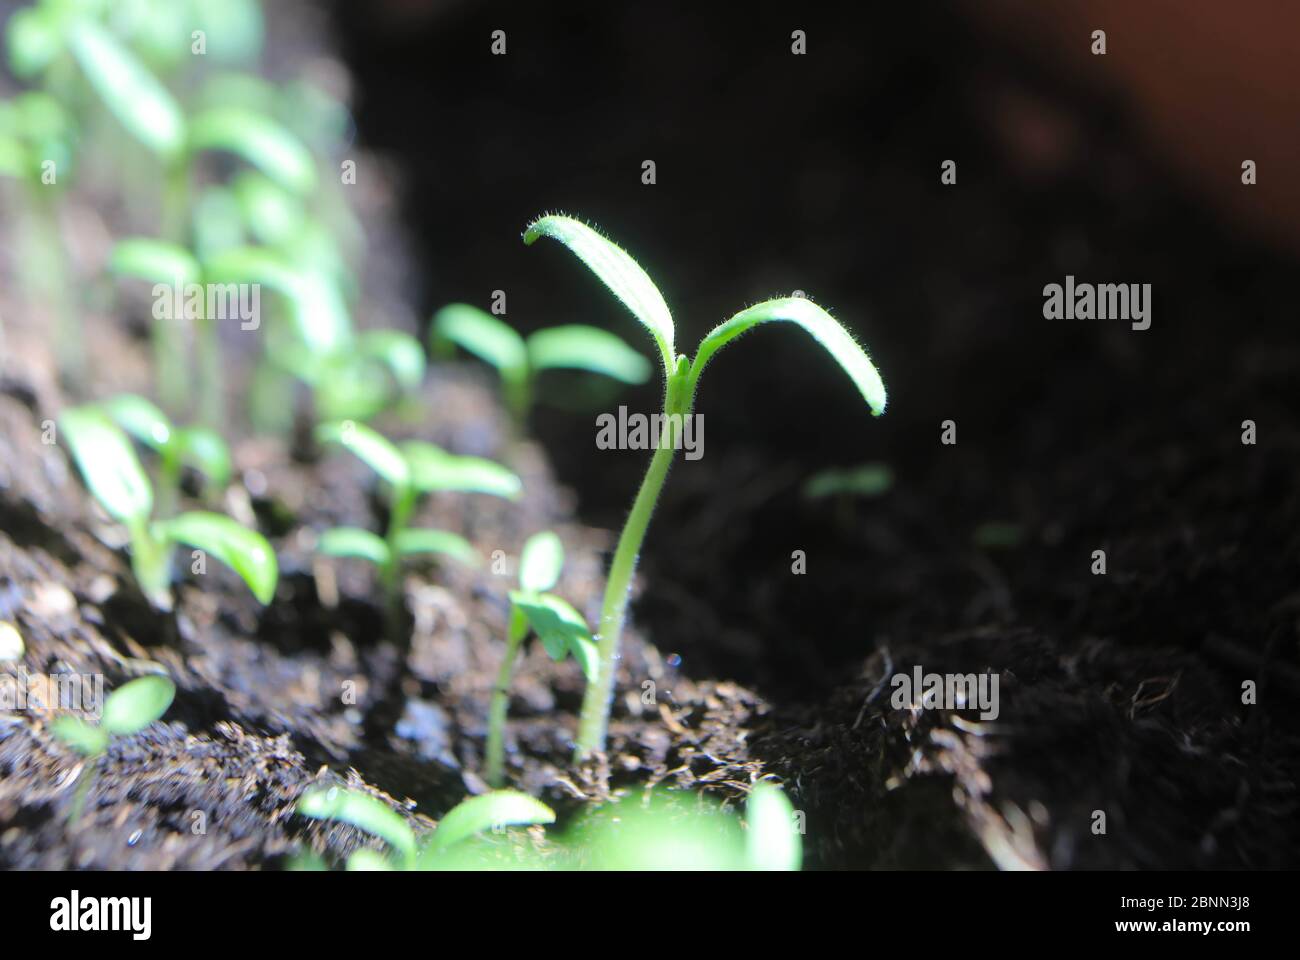 Tomato seedlings growing Stock Photo